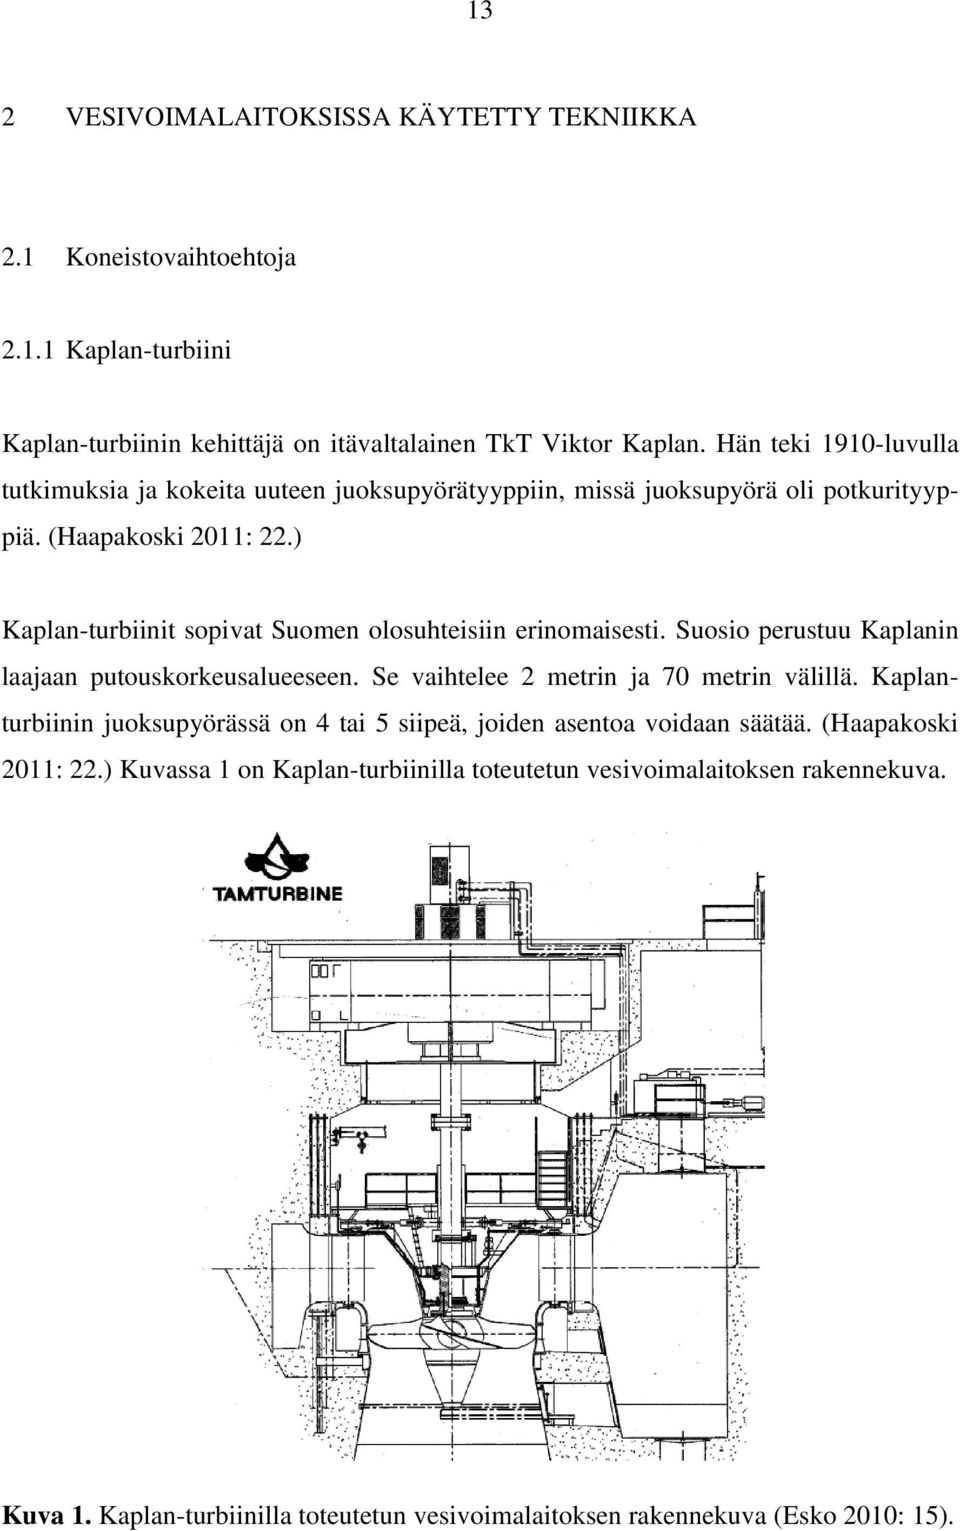 ) Kaplan-turbiinit sopivat Suomen olosuhteisiin erinomaisesti. Suosio perustuu Kaplanin laajaan putouskorkeusalueeseen. Se vaihtelee 2 metrin ja 70 metrin välillä.